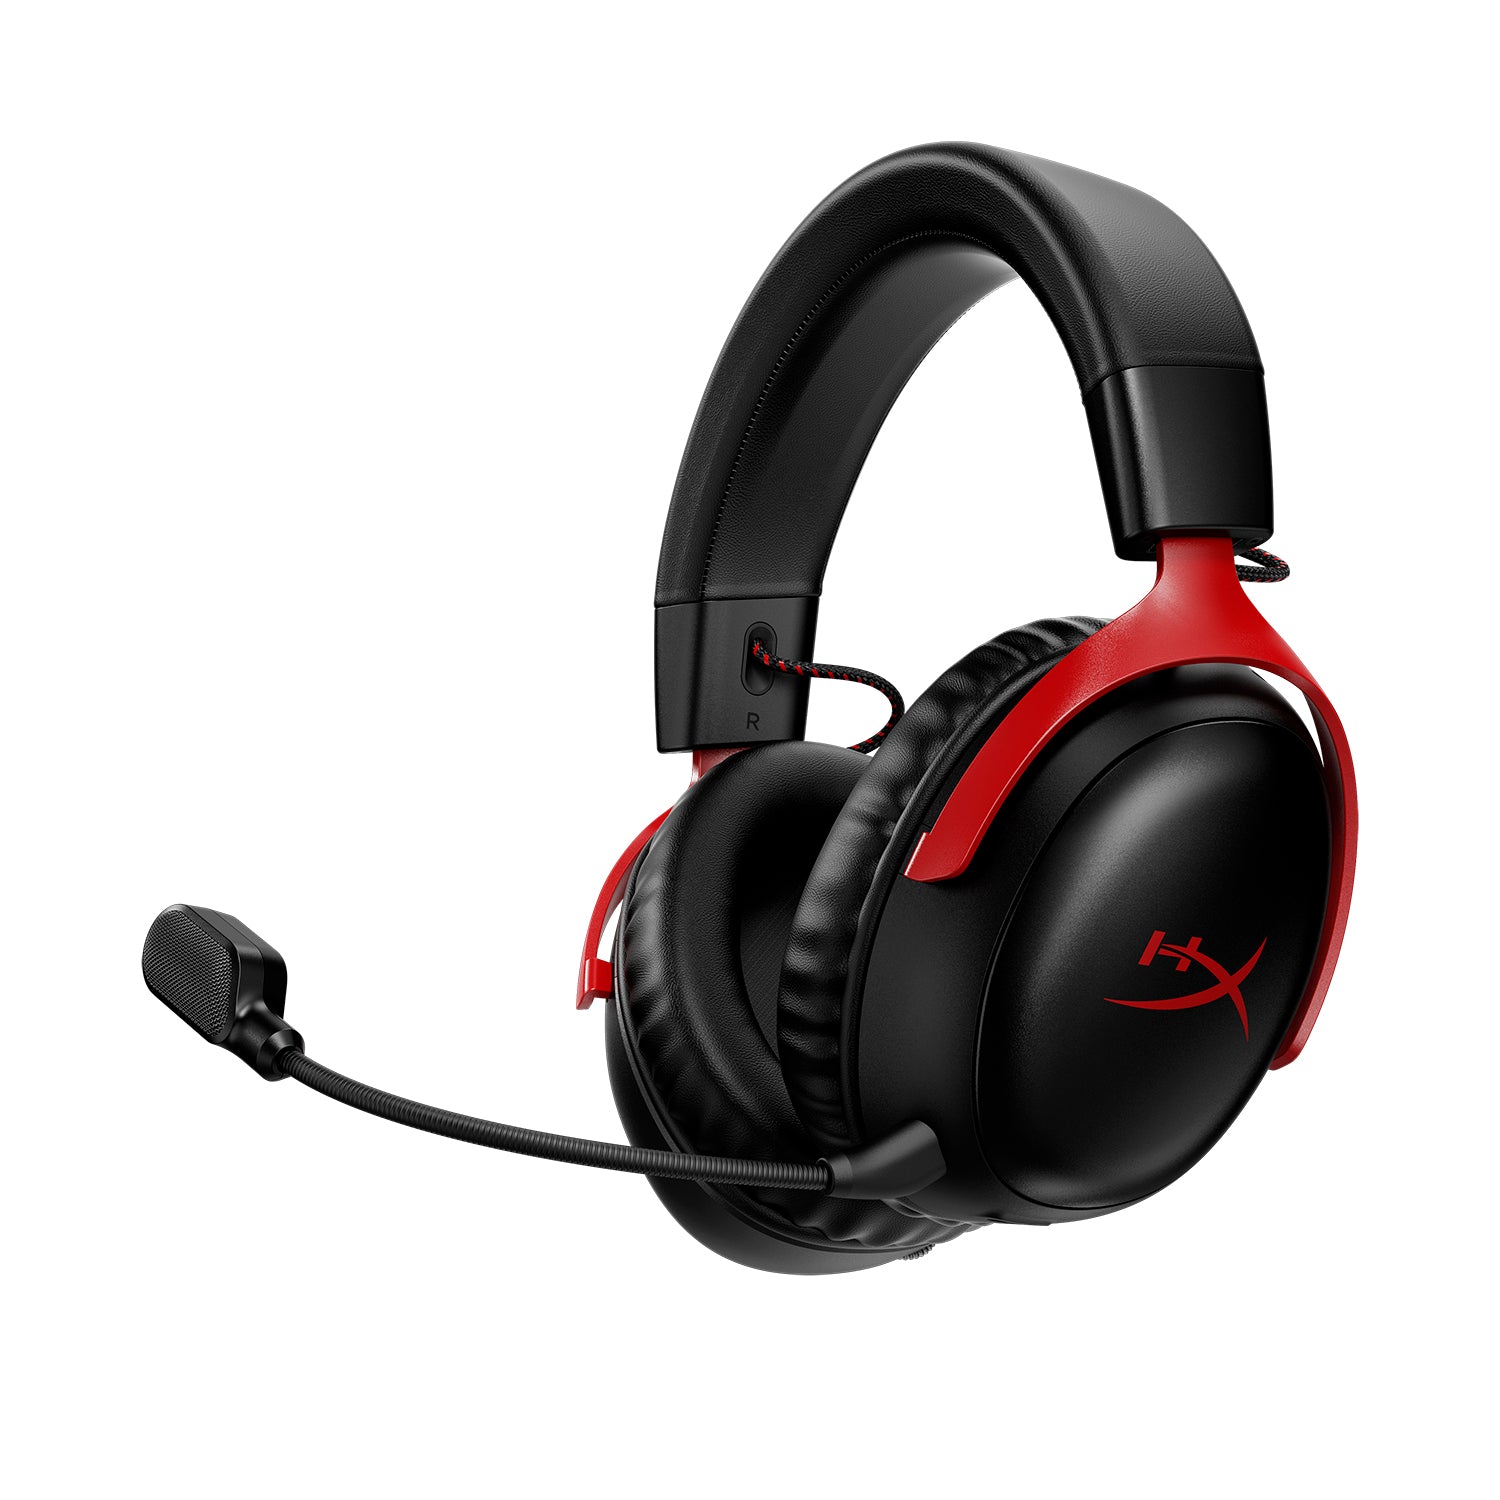 Buy HYPERX Cloud III Wireless Gaming Headset - Black & Red